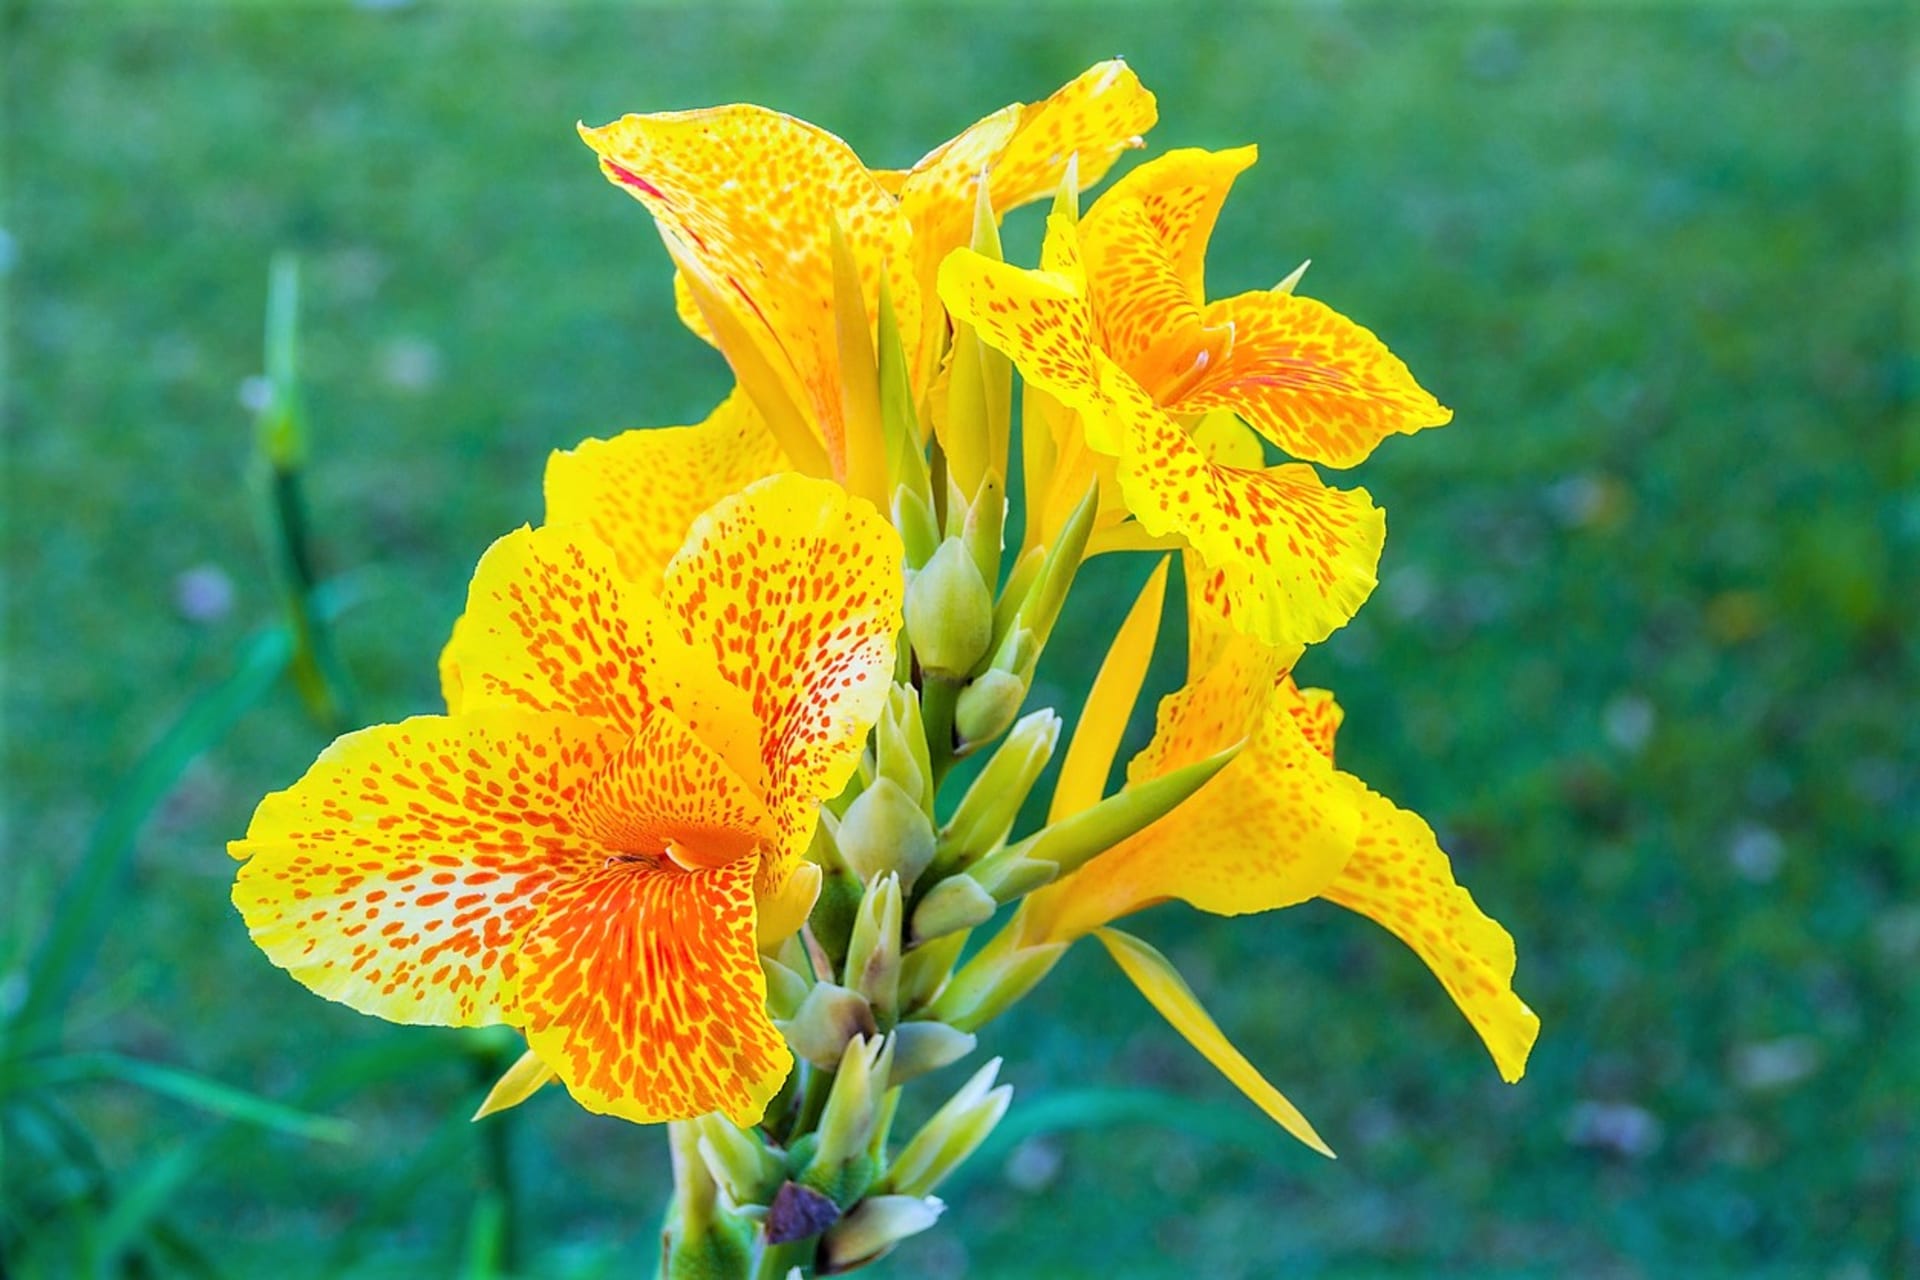 Z nových kříženců jsou oblíbené hlavně trpasličí hybridy s výškou okolo 60 cm, které skvěle dobře rostou a bohatě kvetou také v nádobách. Na snímku kultivar Lucifer.